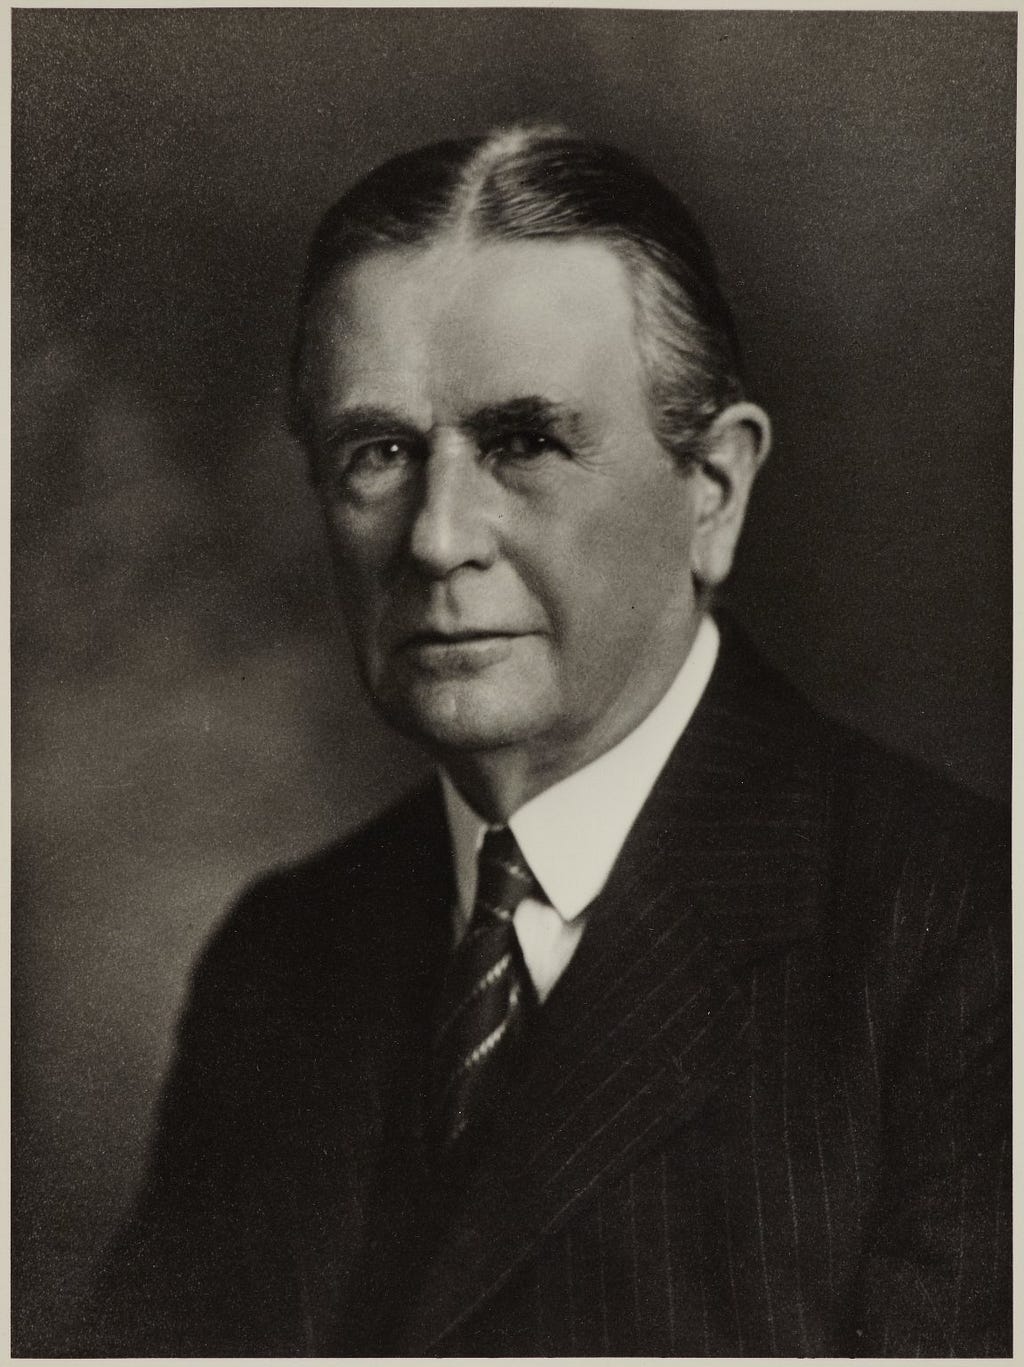 Monochrome portrait photograph of Ernest Simon.